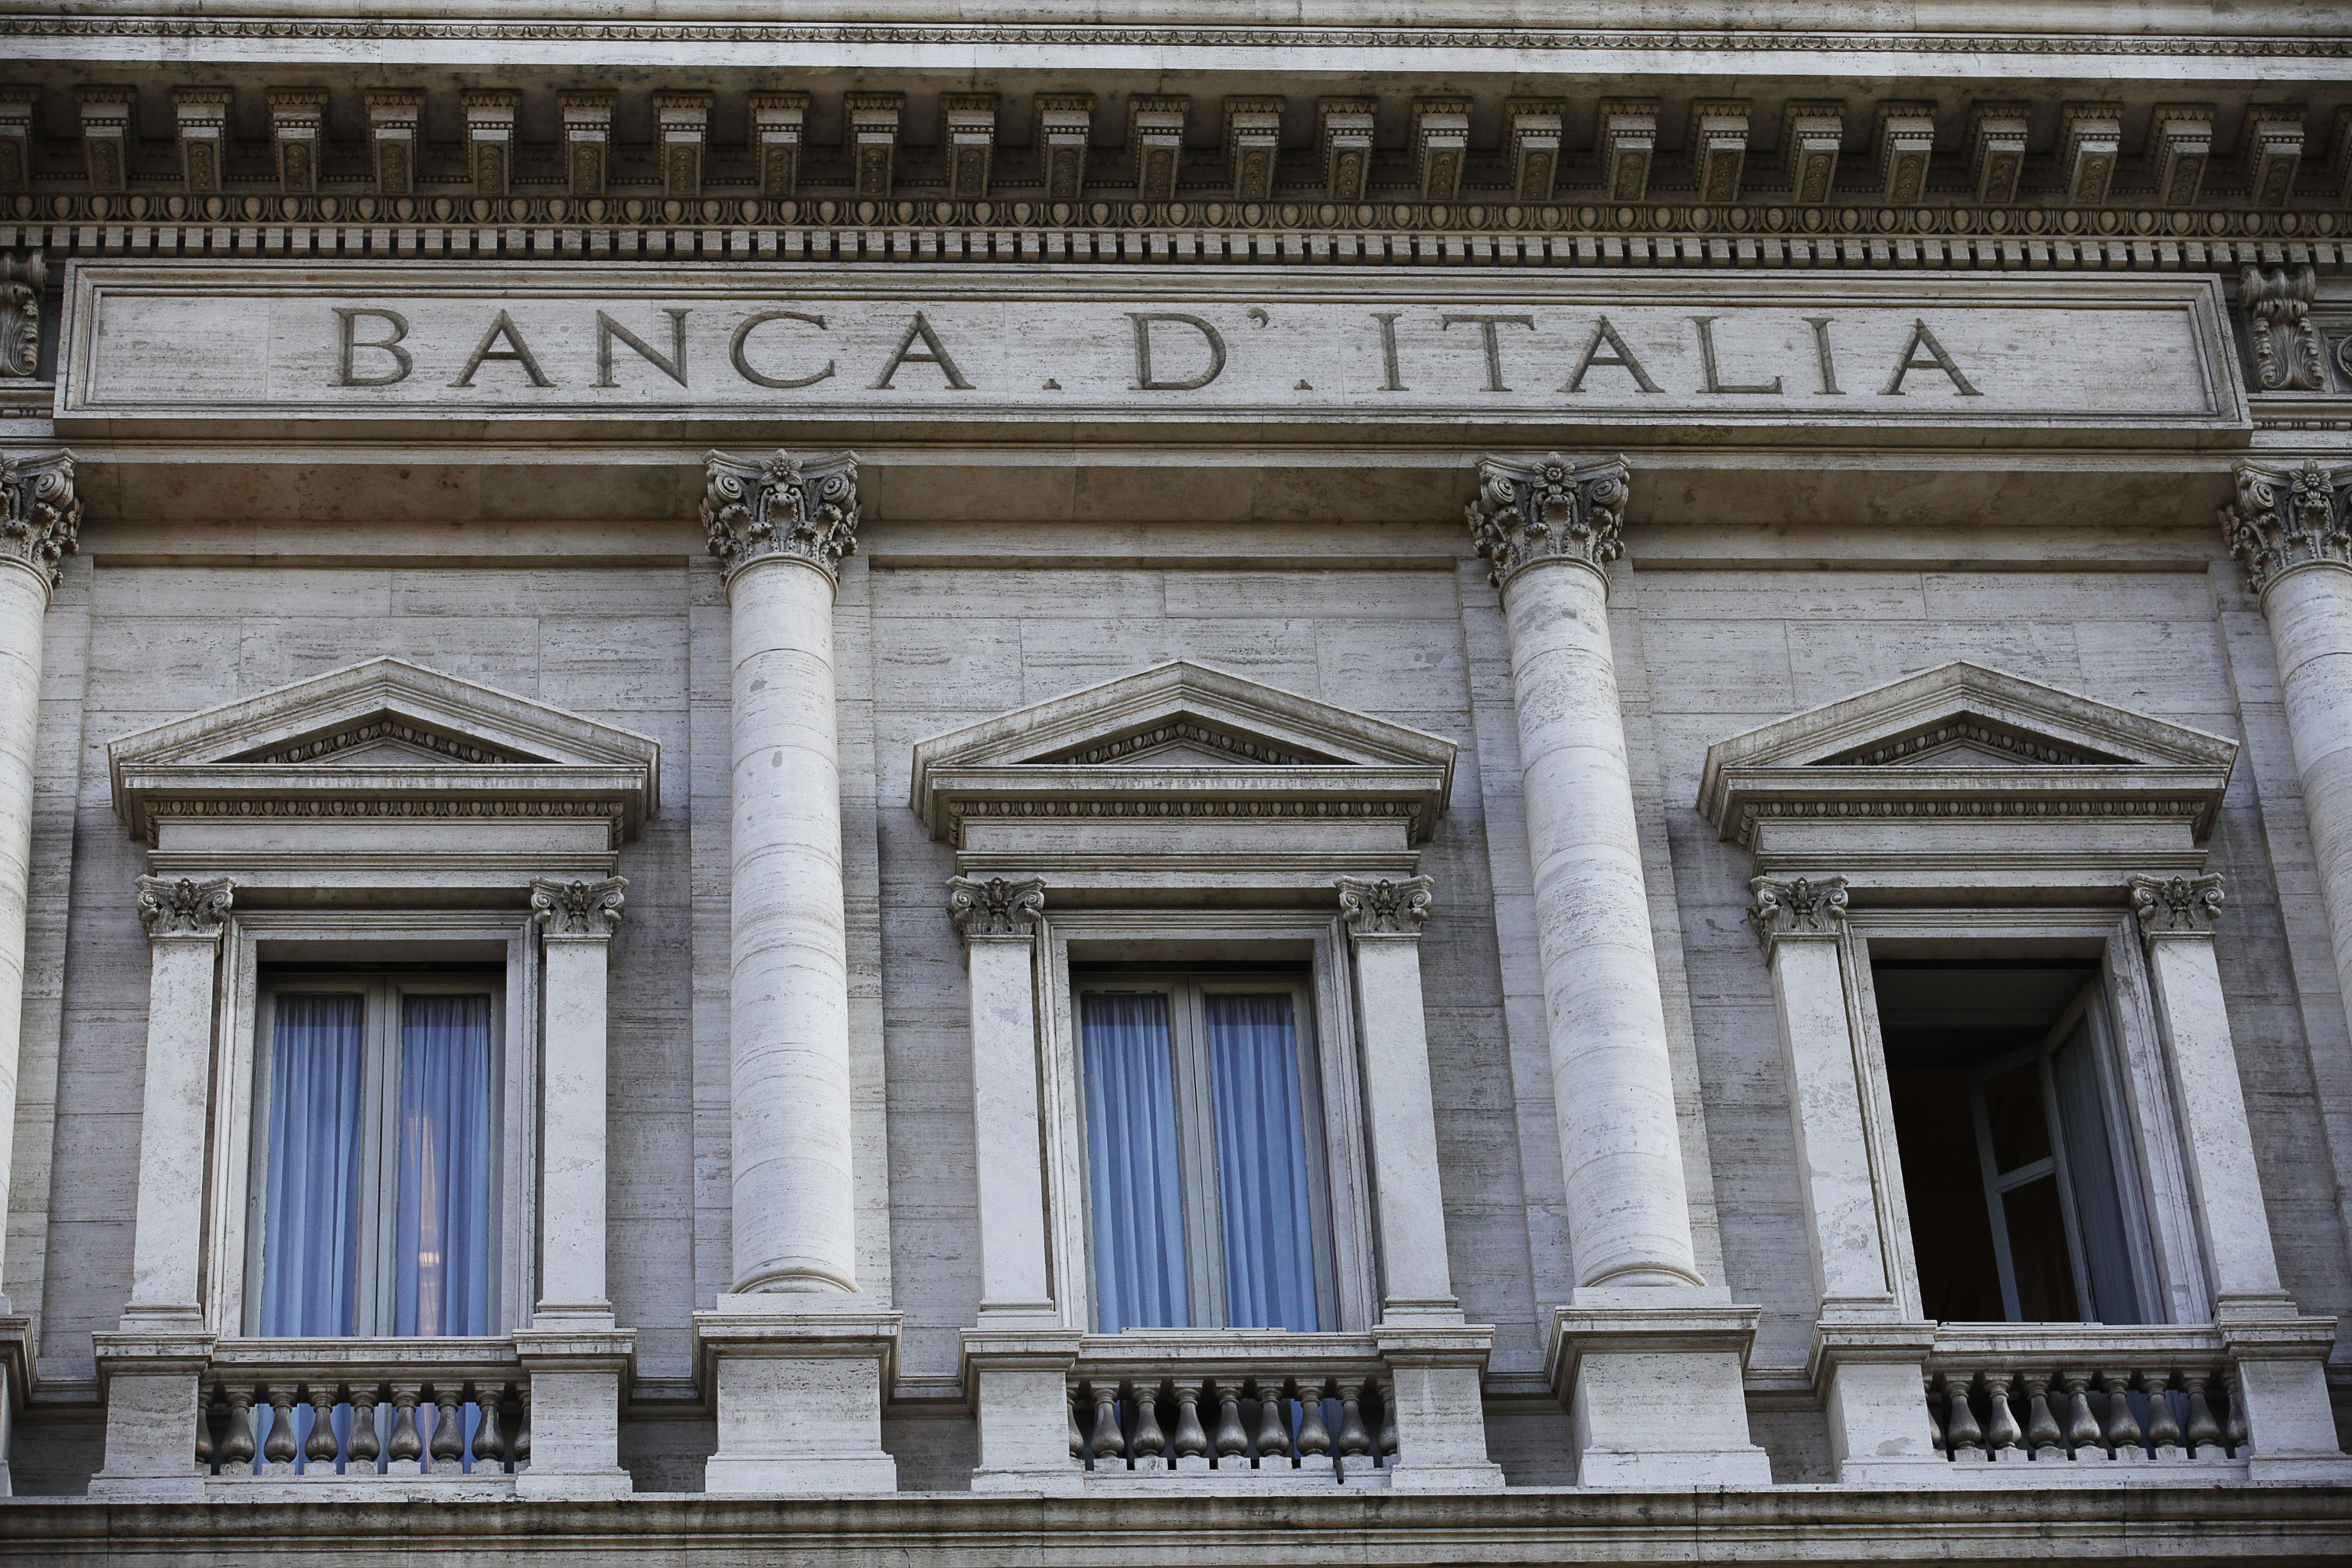 Banca d’Italia: Riforma a 5 Stelle per una Banca d’Italia pubblica, indipendente, autorevole